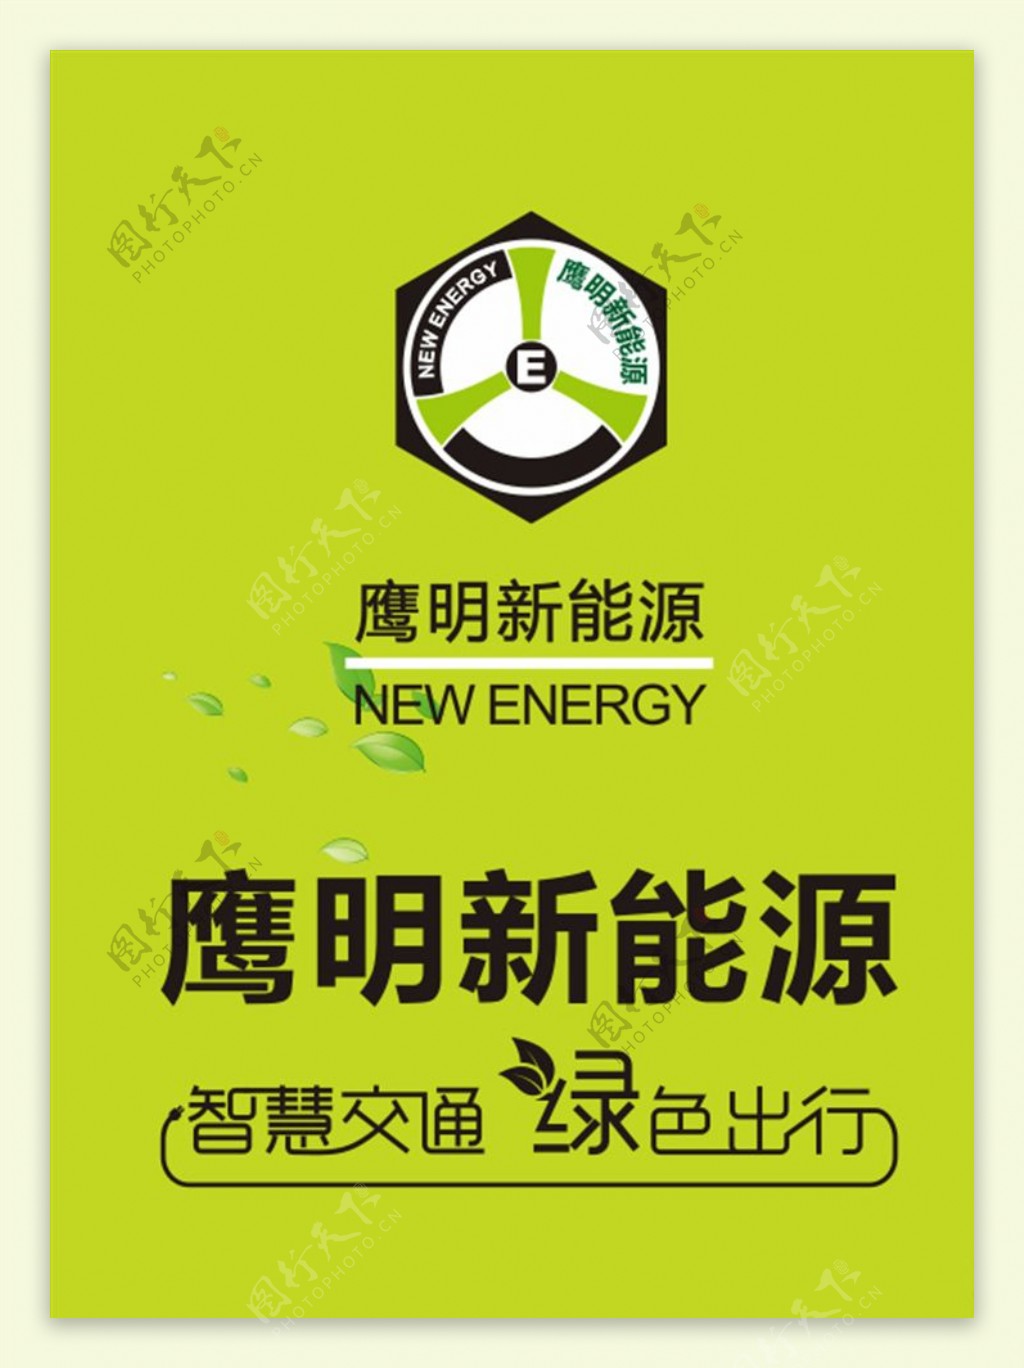 鹰明新能源logo